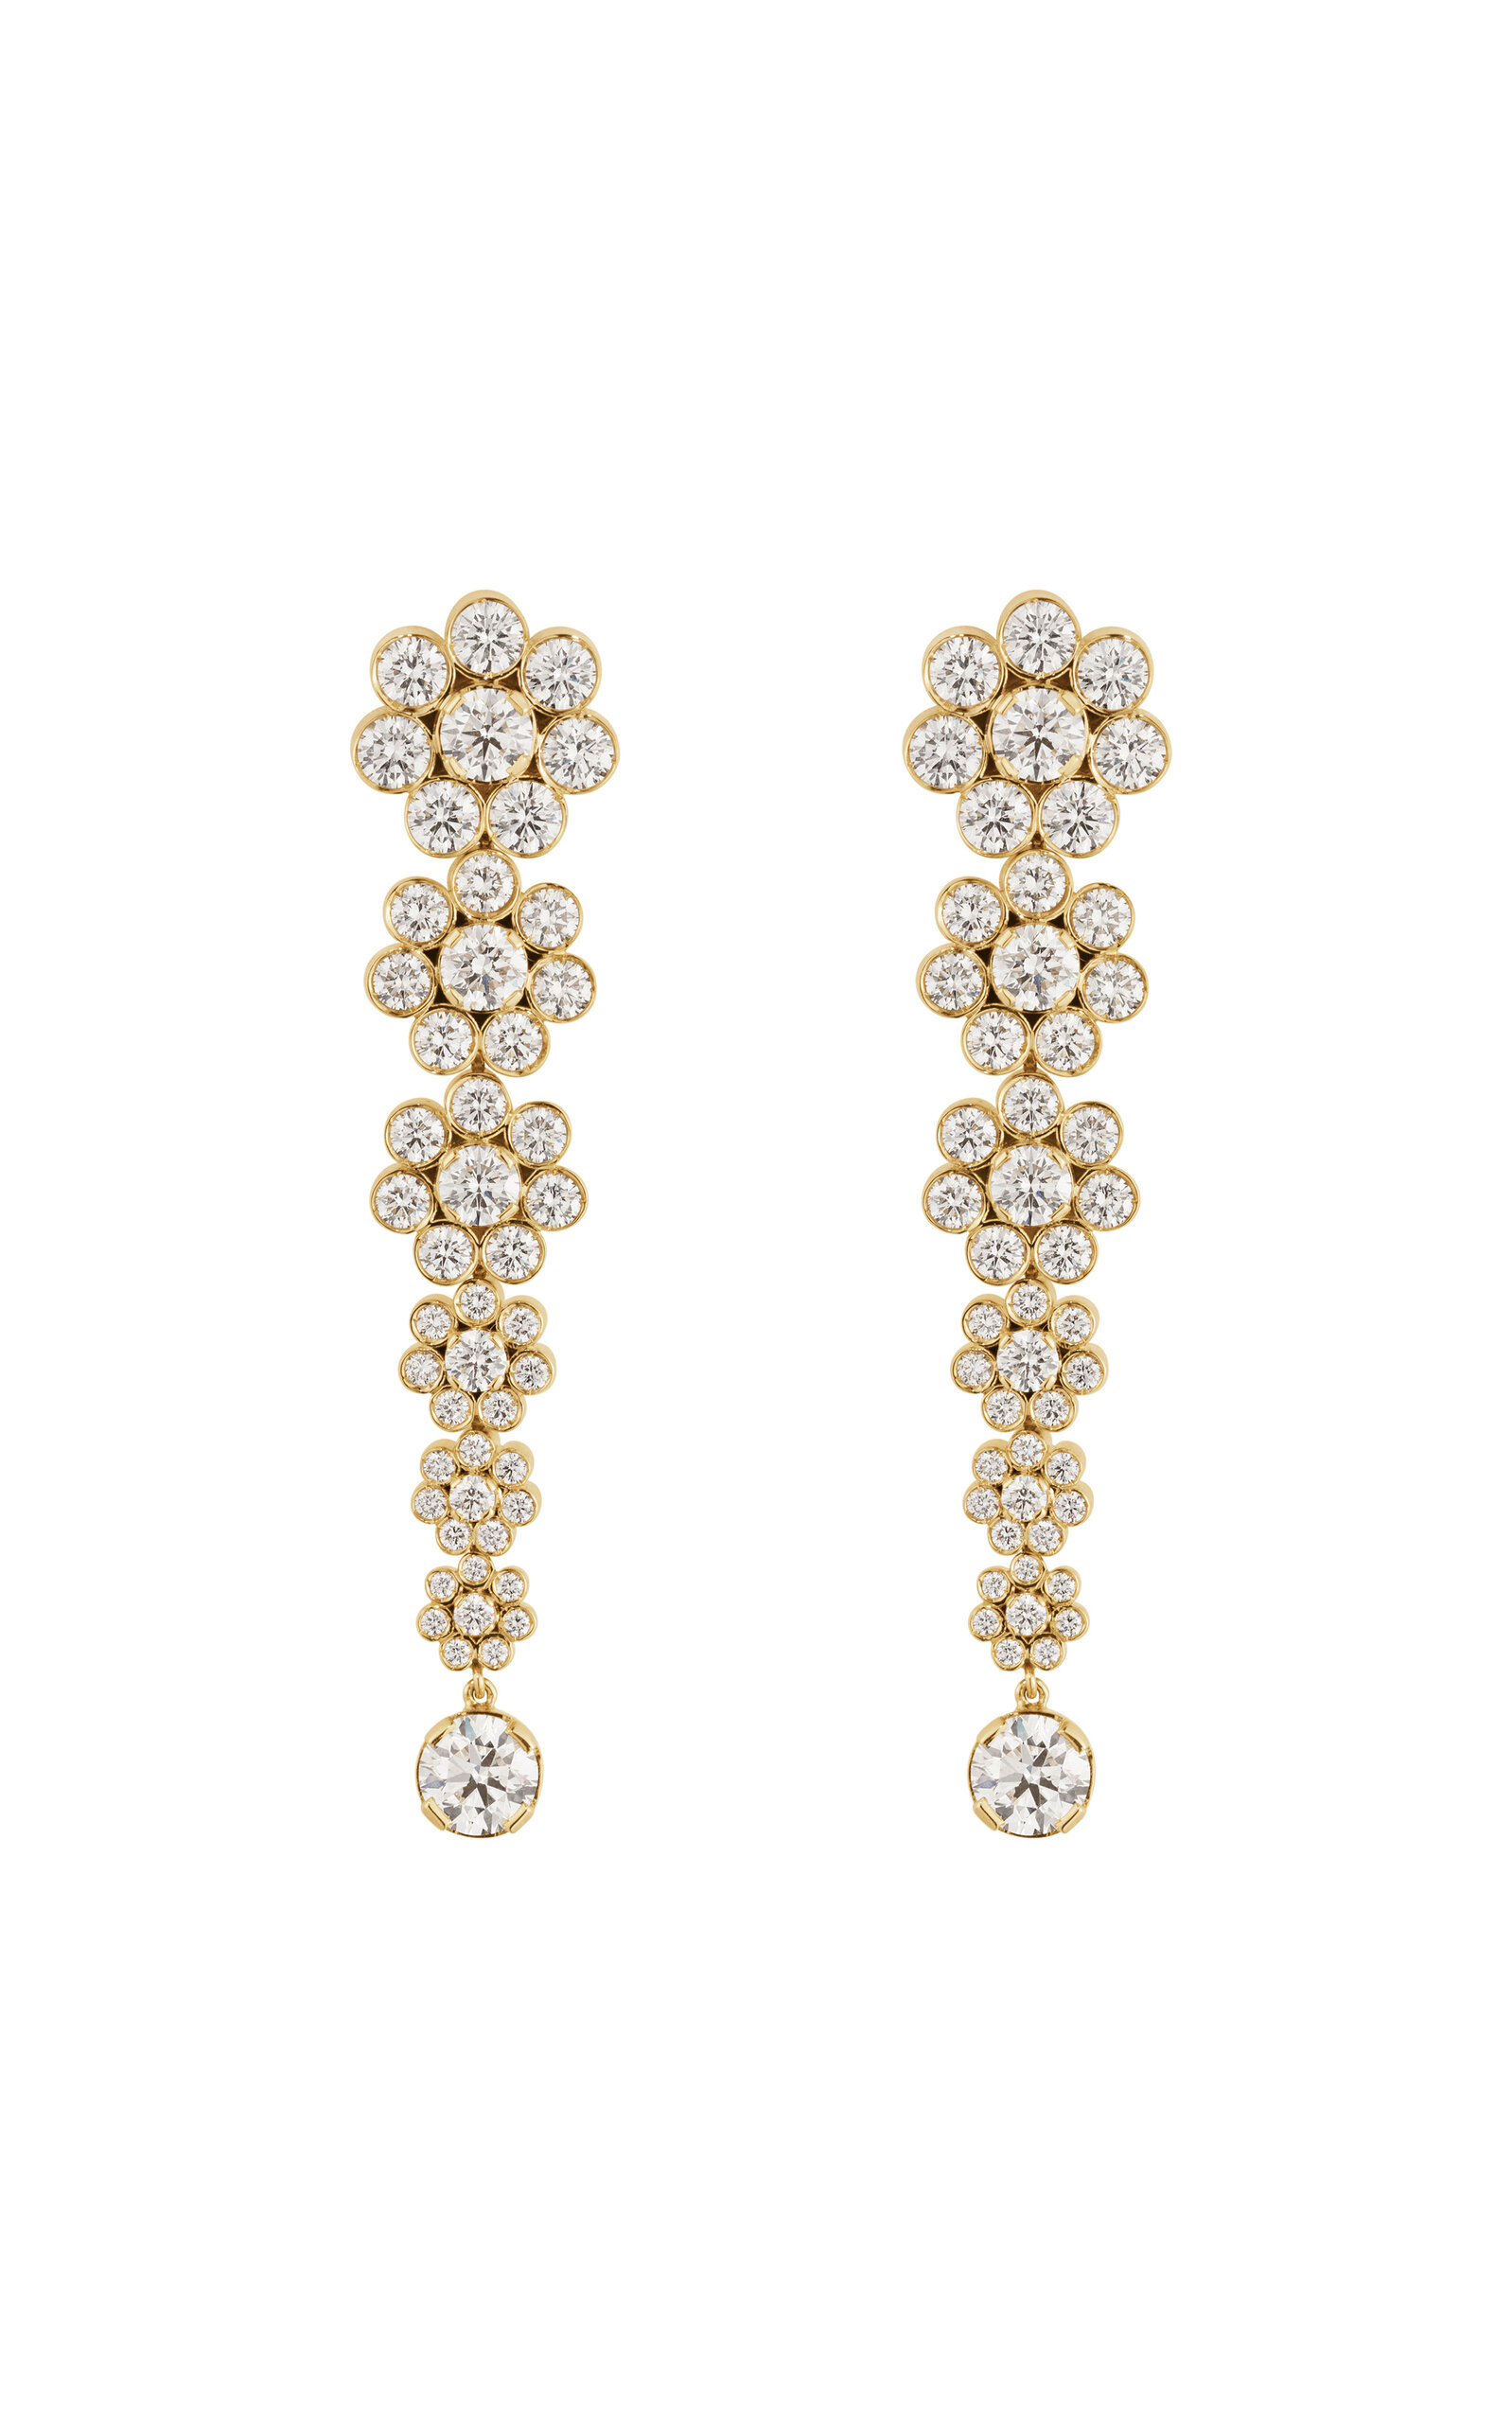 Fontaine de Fleur 18K Yellow Gold Diamond Earrings